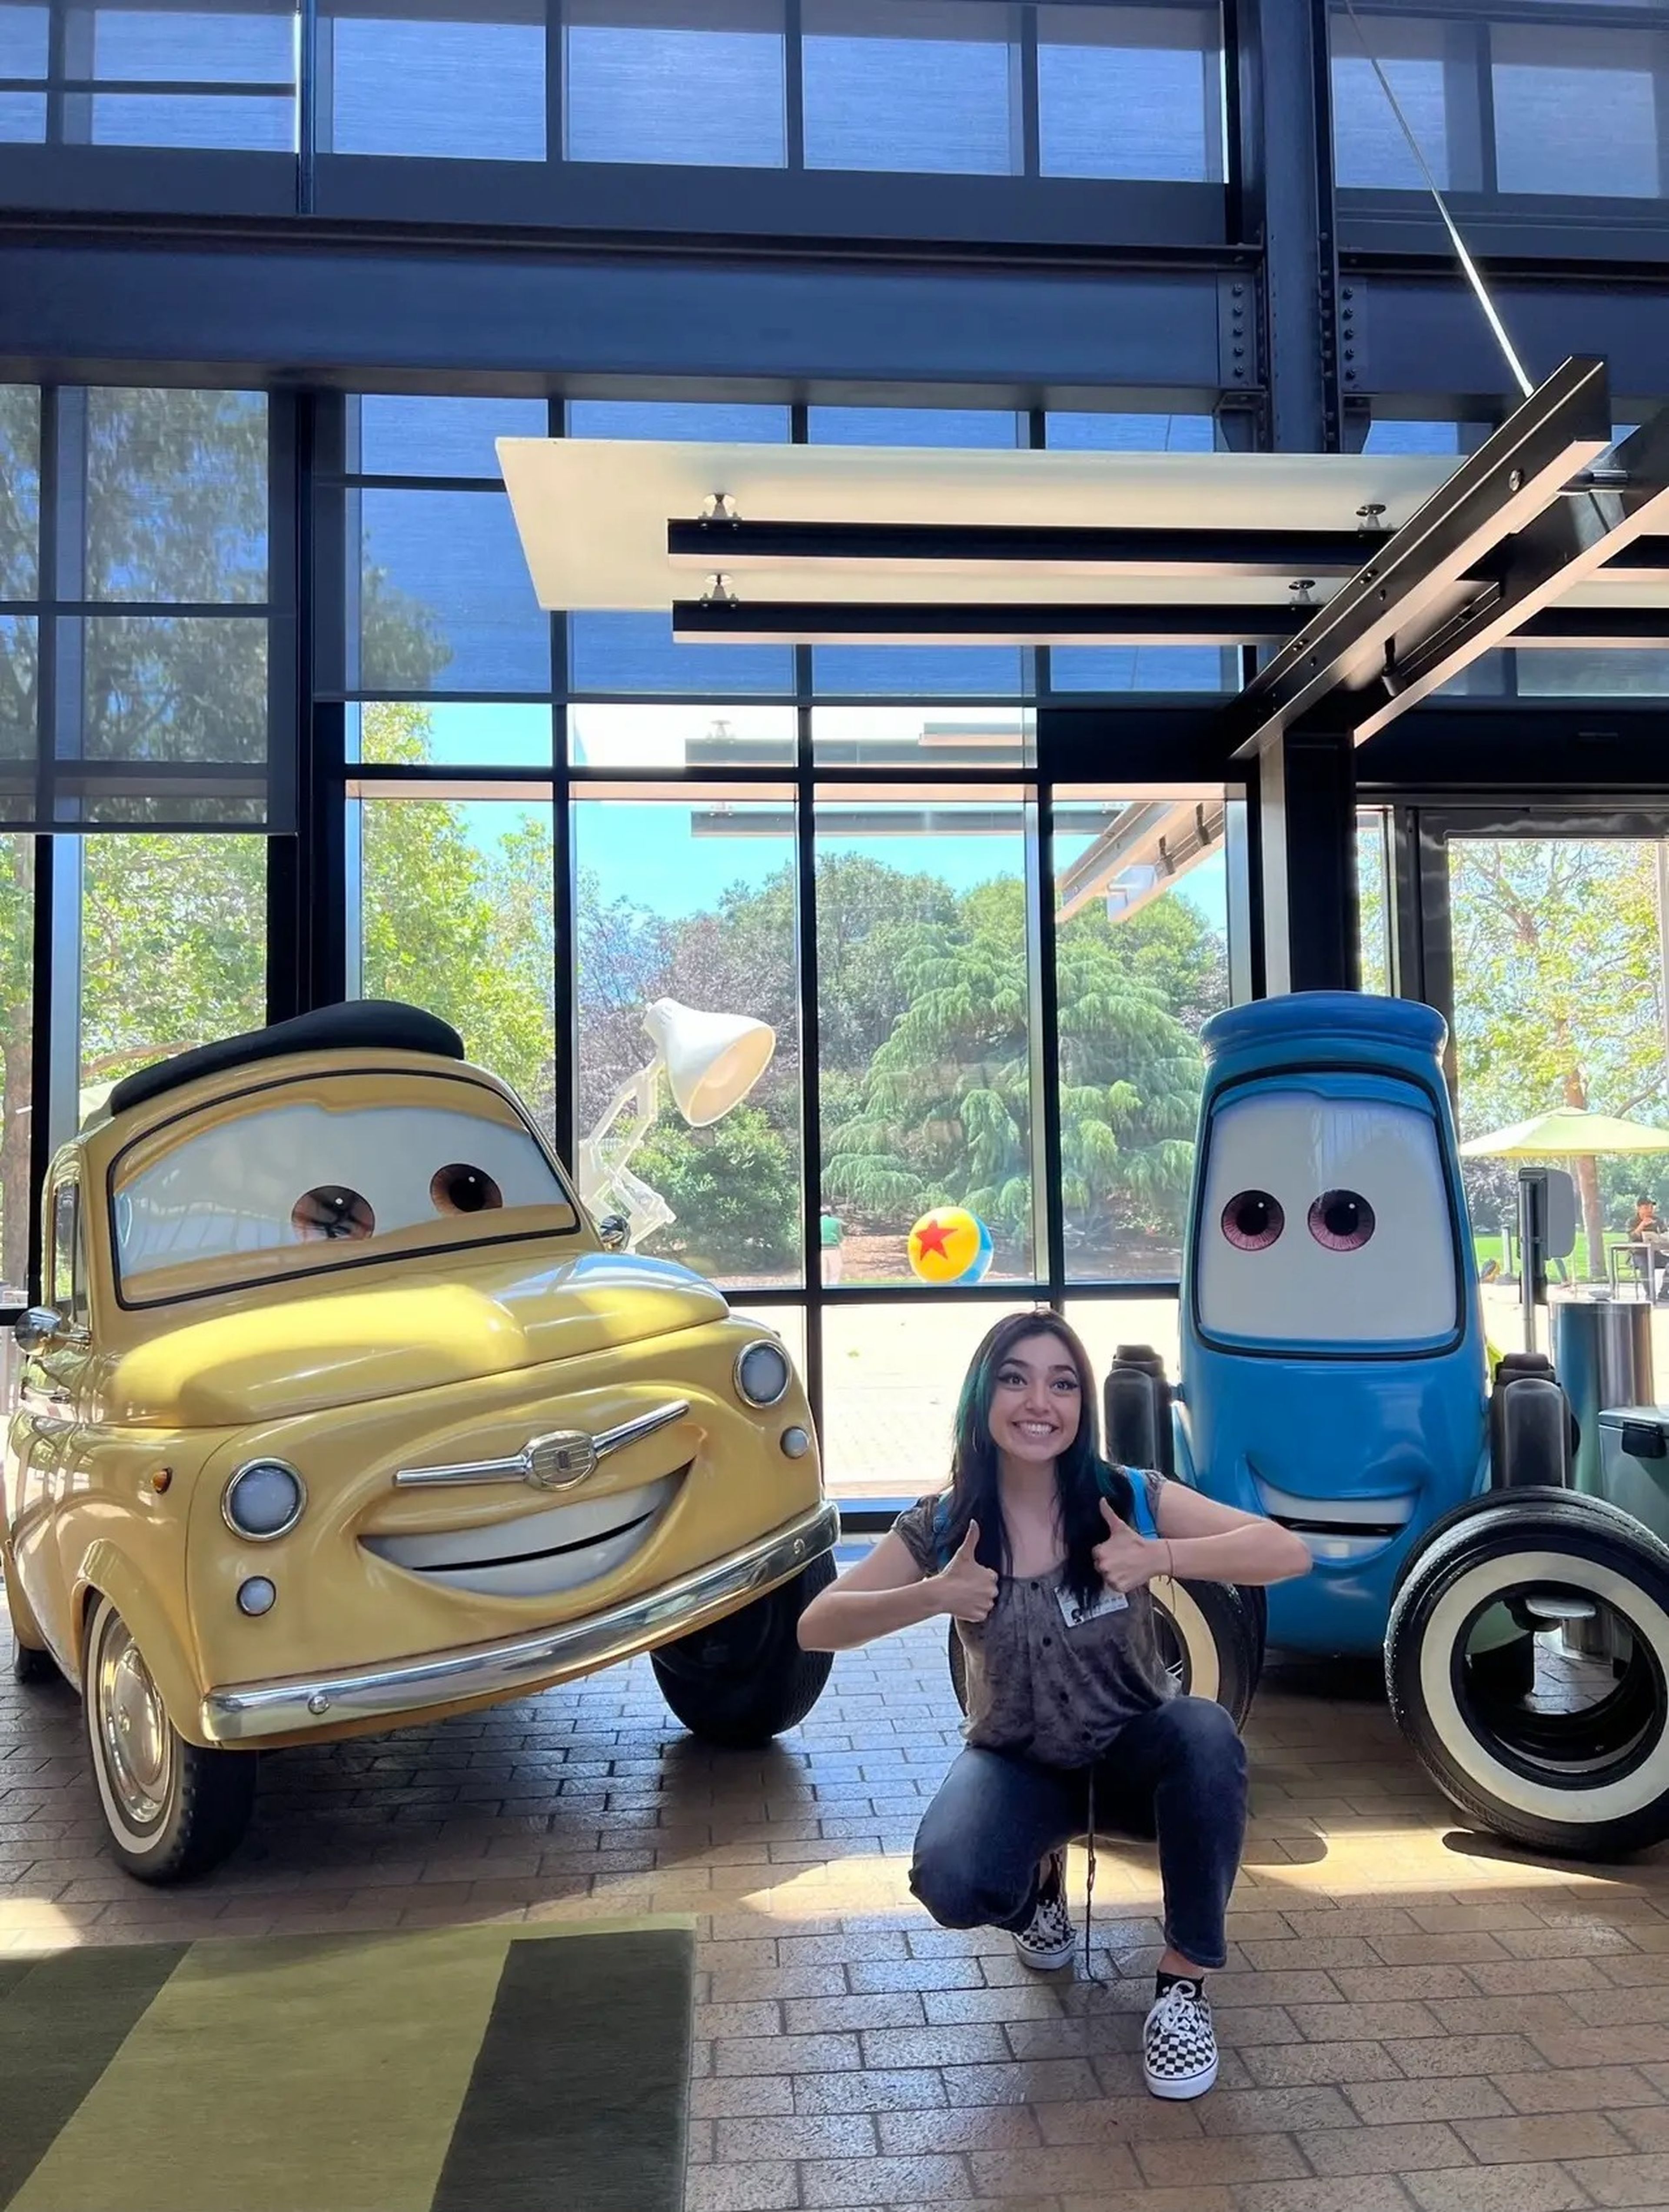 Plascencia hizo un 'tour' exclusivo por el campus de Pixar después de que los empleados viesen sus dibujos.